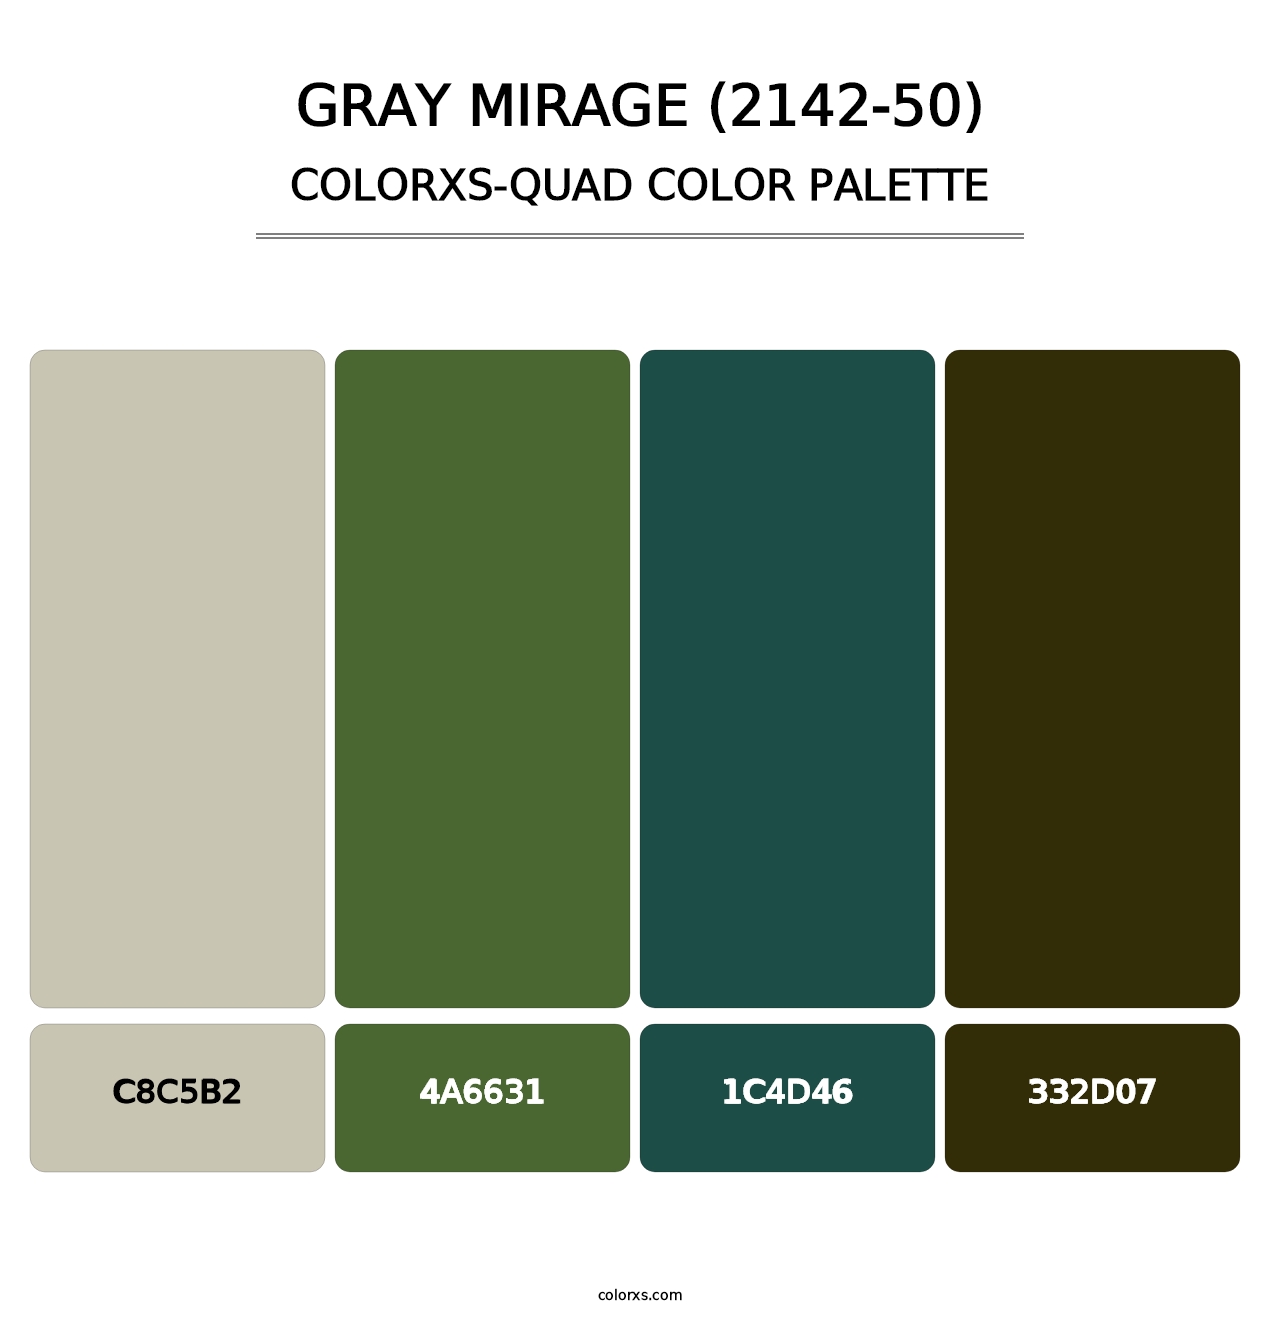 Gray Mirage (2142-50) - Colorxs Quad Palette